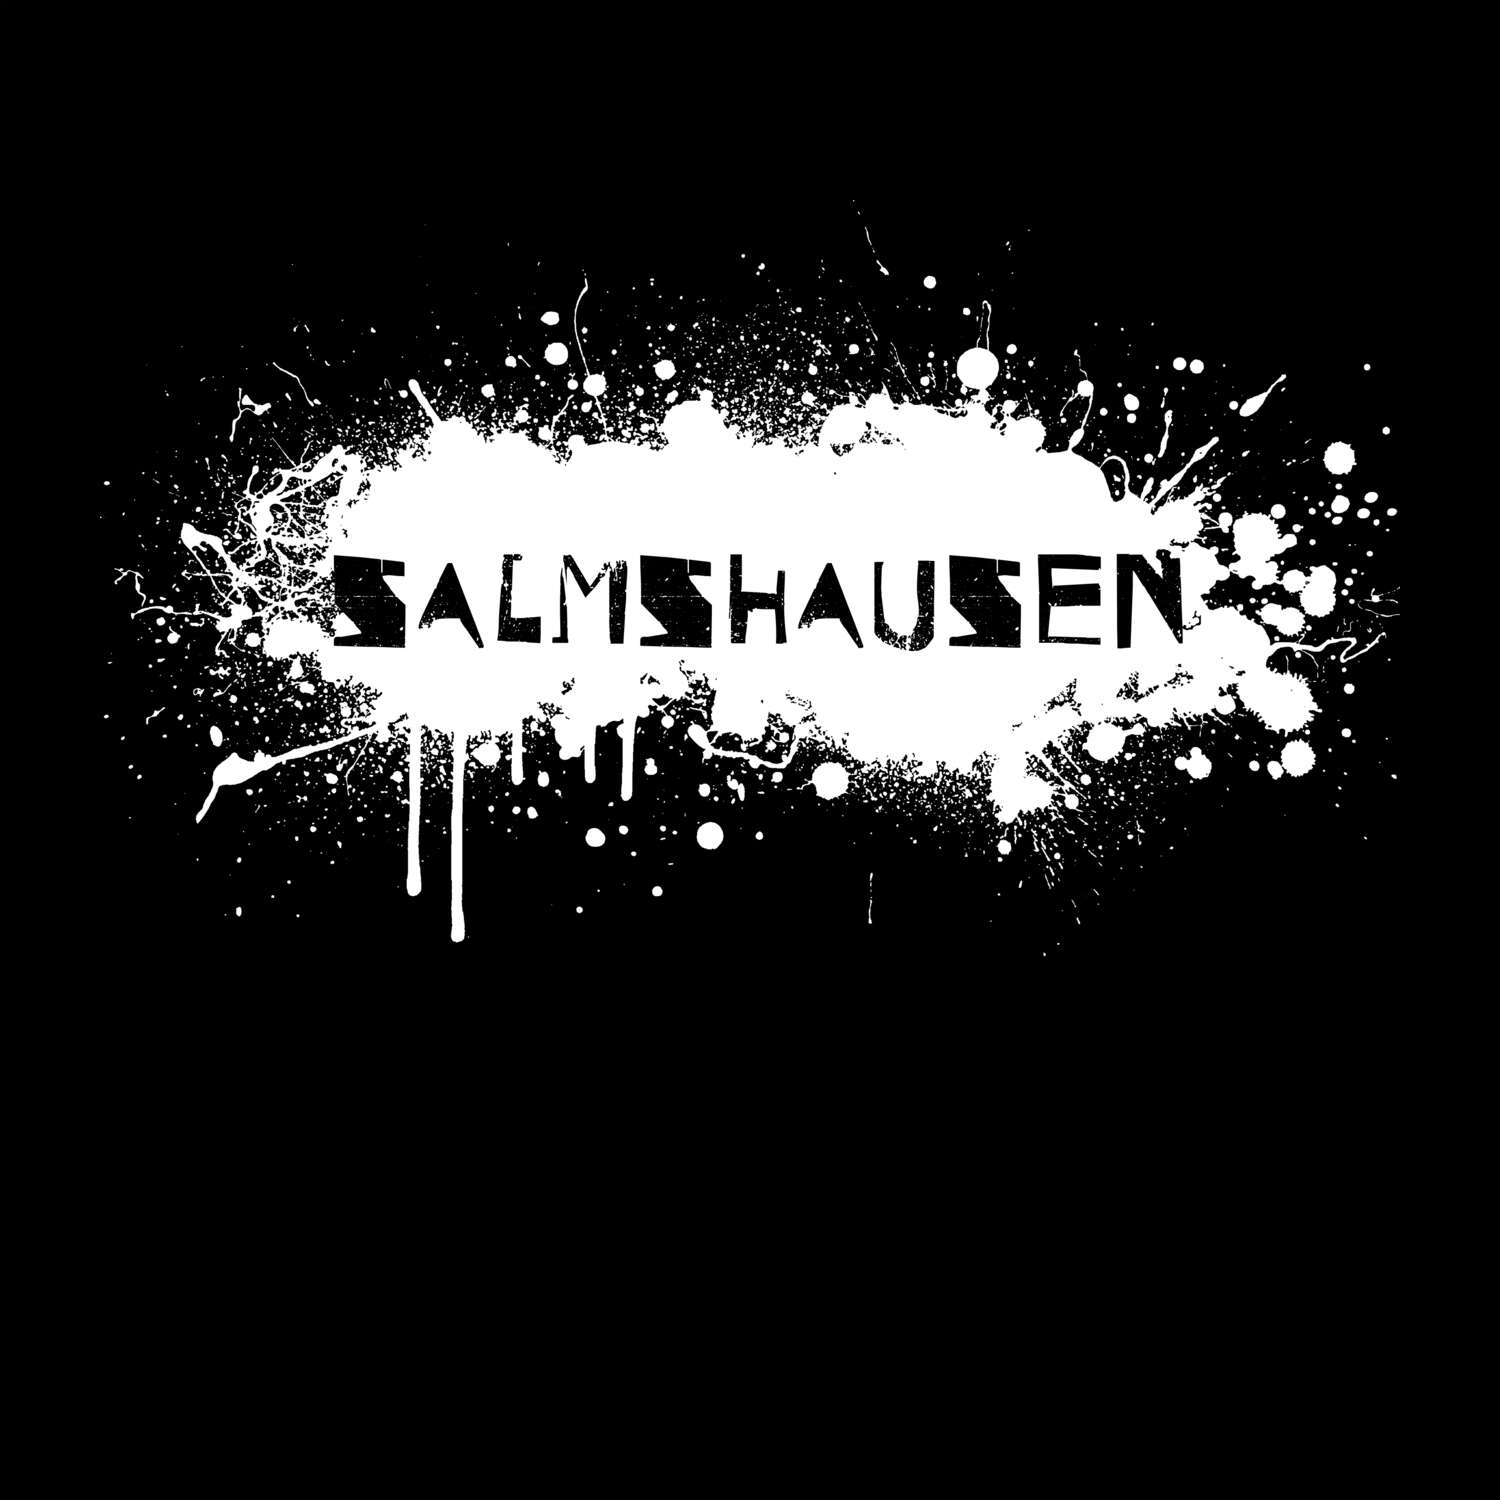 Salmshausen T-Shirt »Paint Splash Punk«